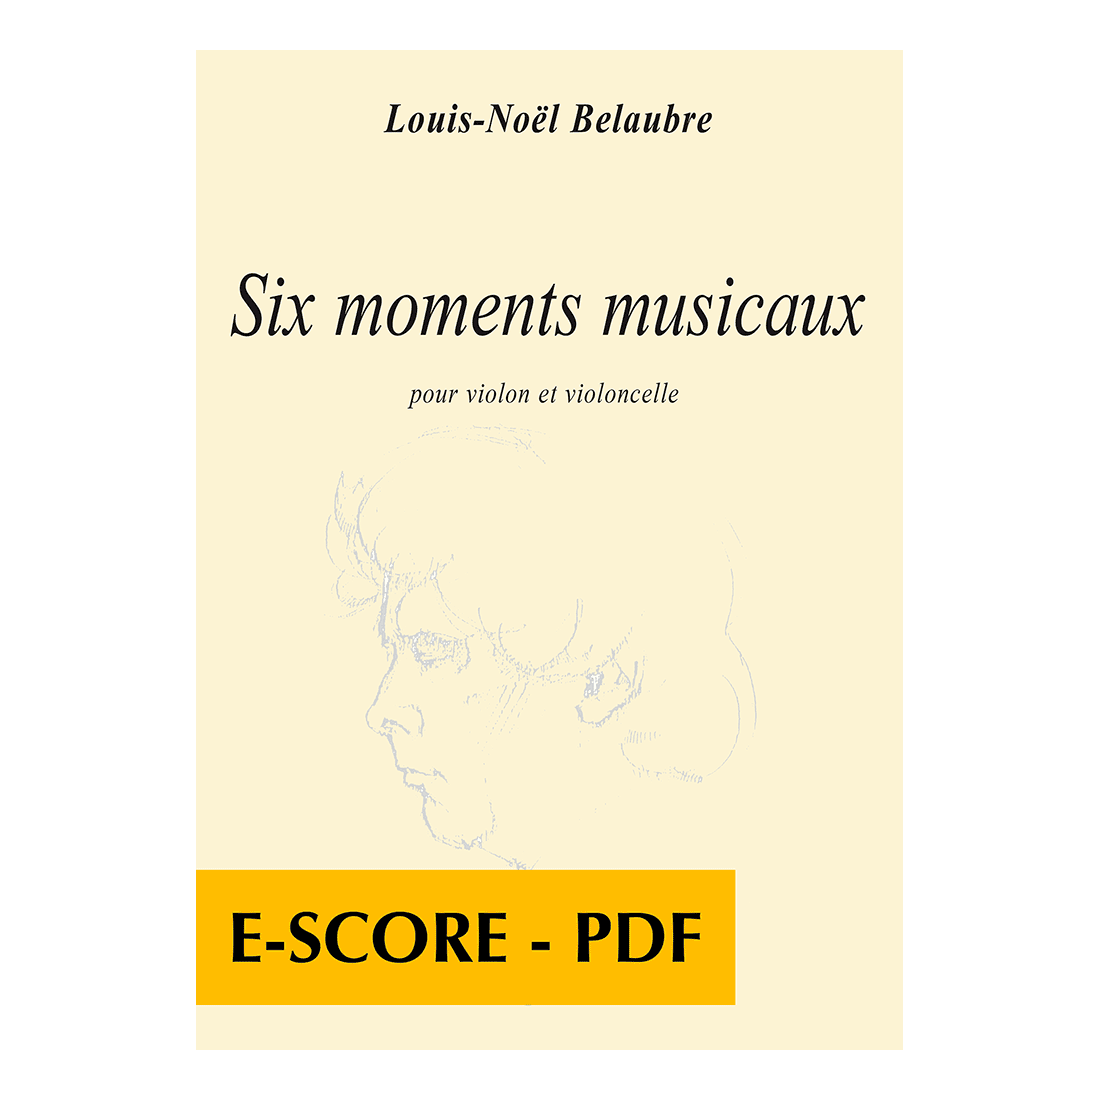 Six moments musicaux für Violine und Violoncello - E-score PDF